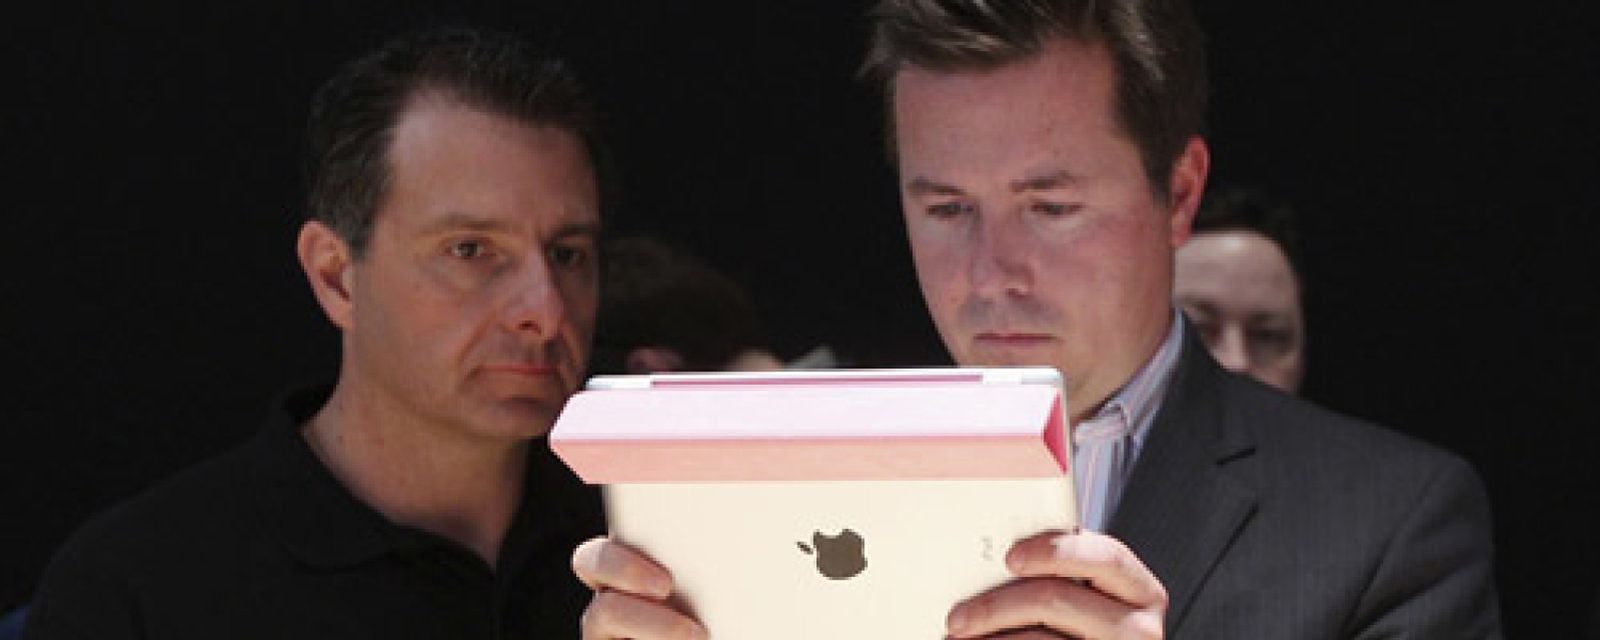 Foto: Fiasco o no, el nuevo iPad cuelga el cartel de "todo vendido"